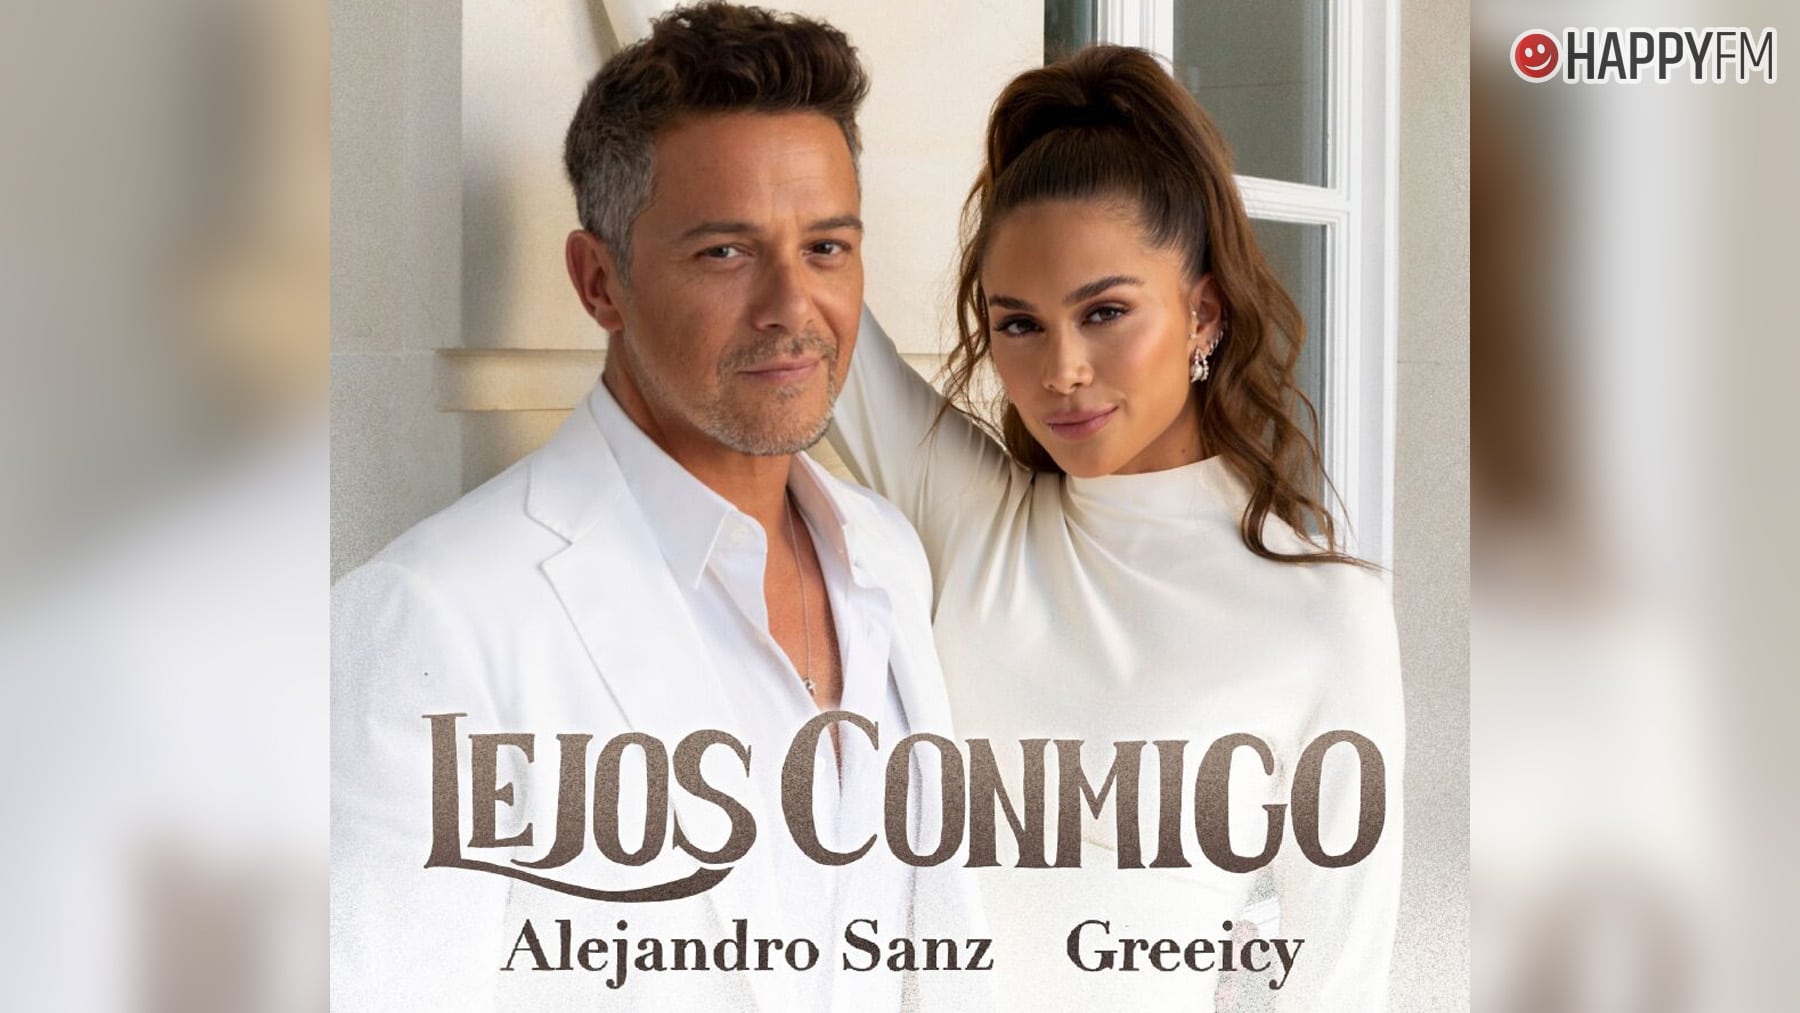 ‘Lejos conmigo’, de Greeicy y Alejandro Sanz: letra y vídeo